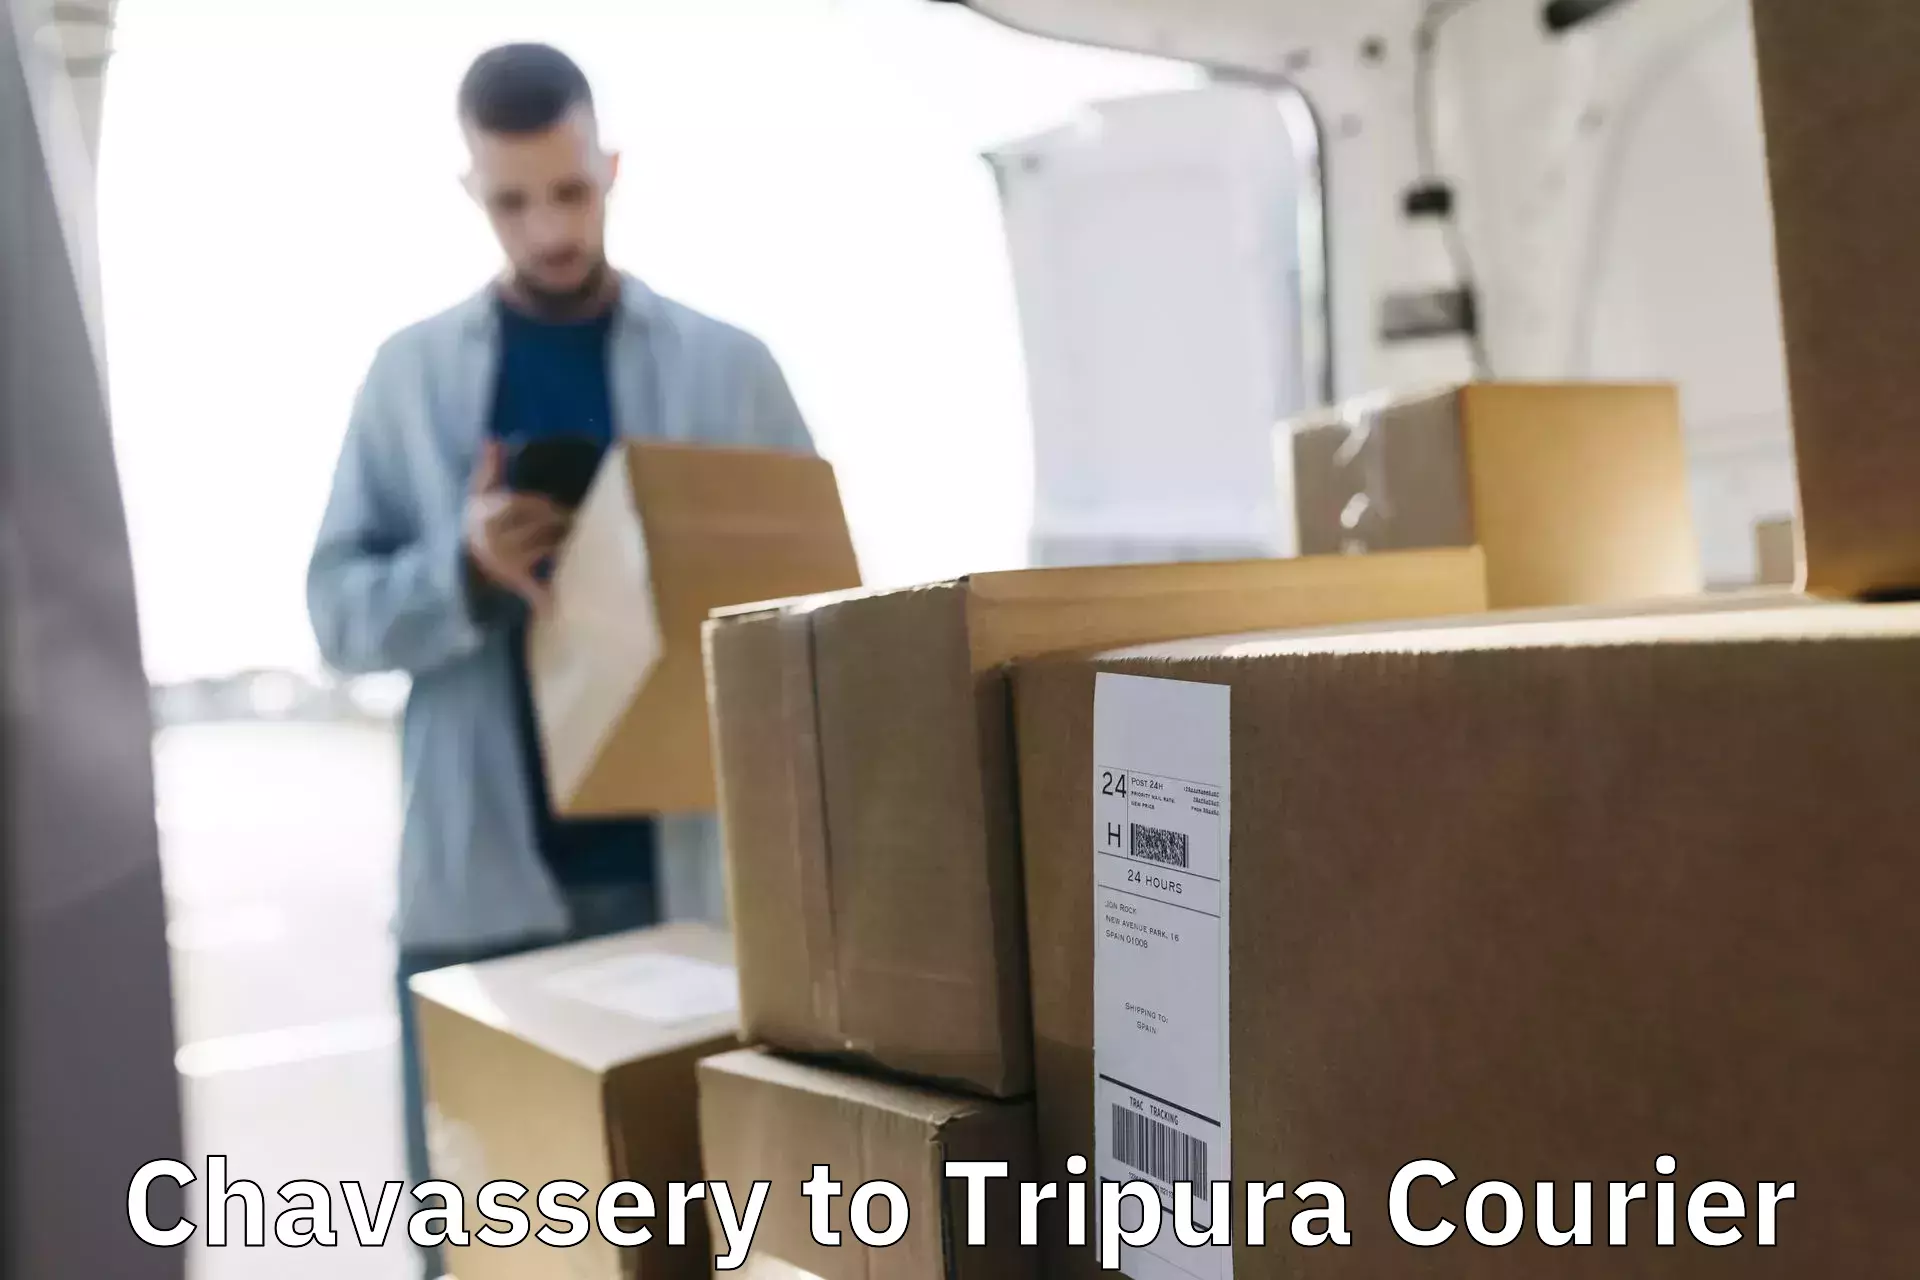 24/7 courier service Chavassery to IIIT Agartala